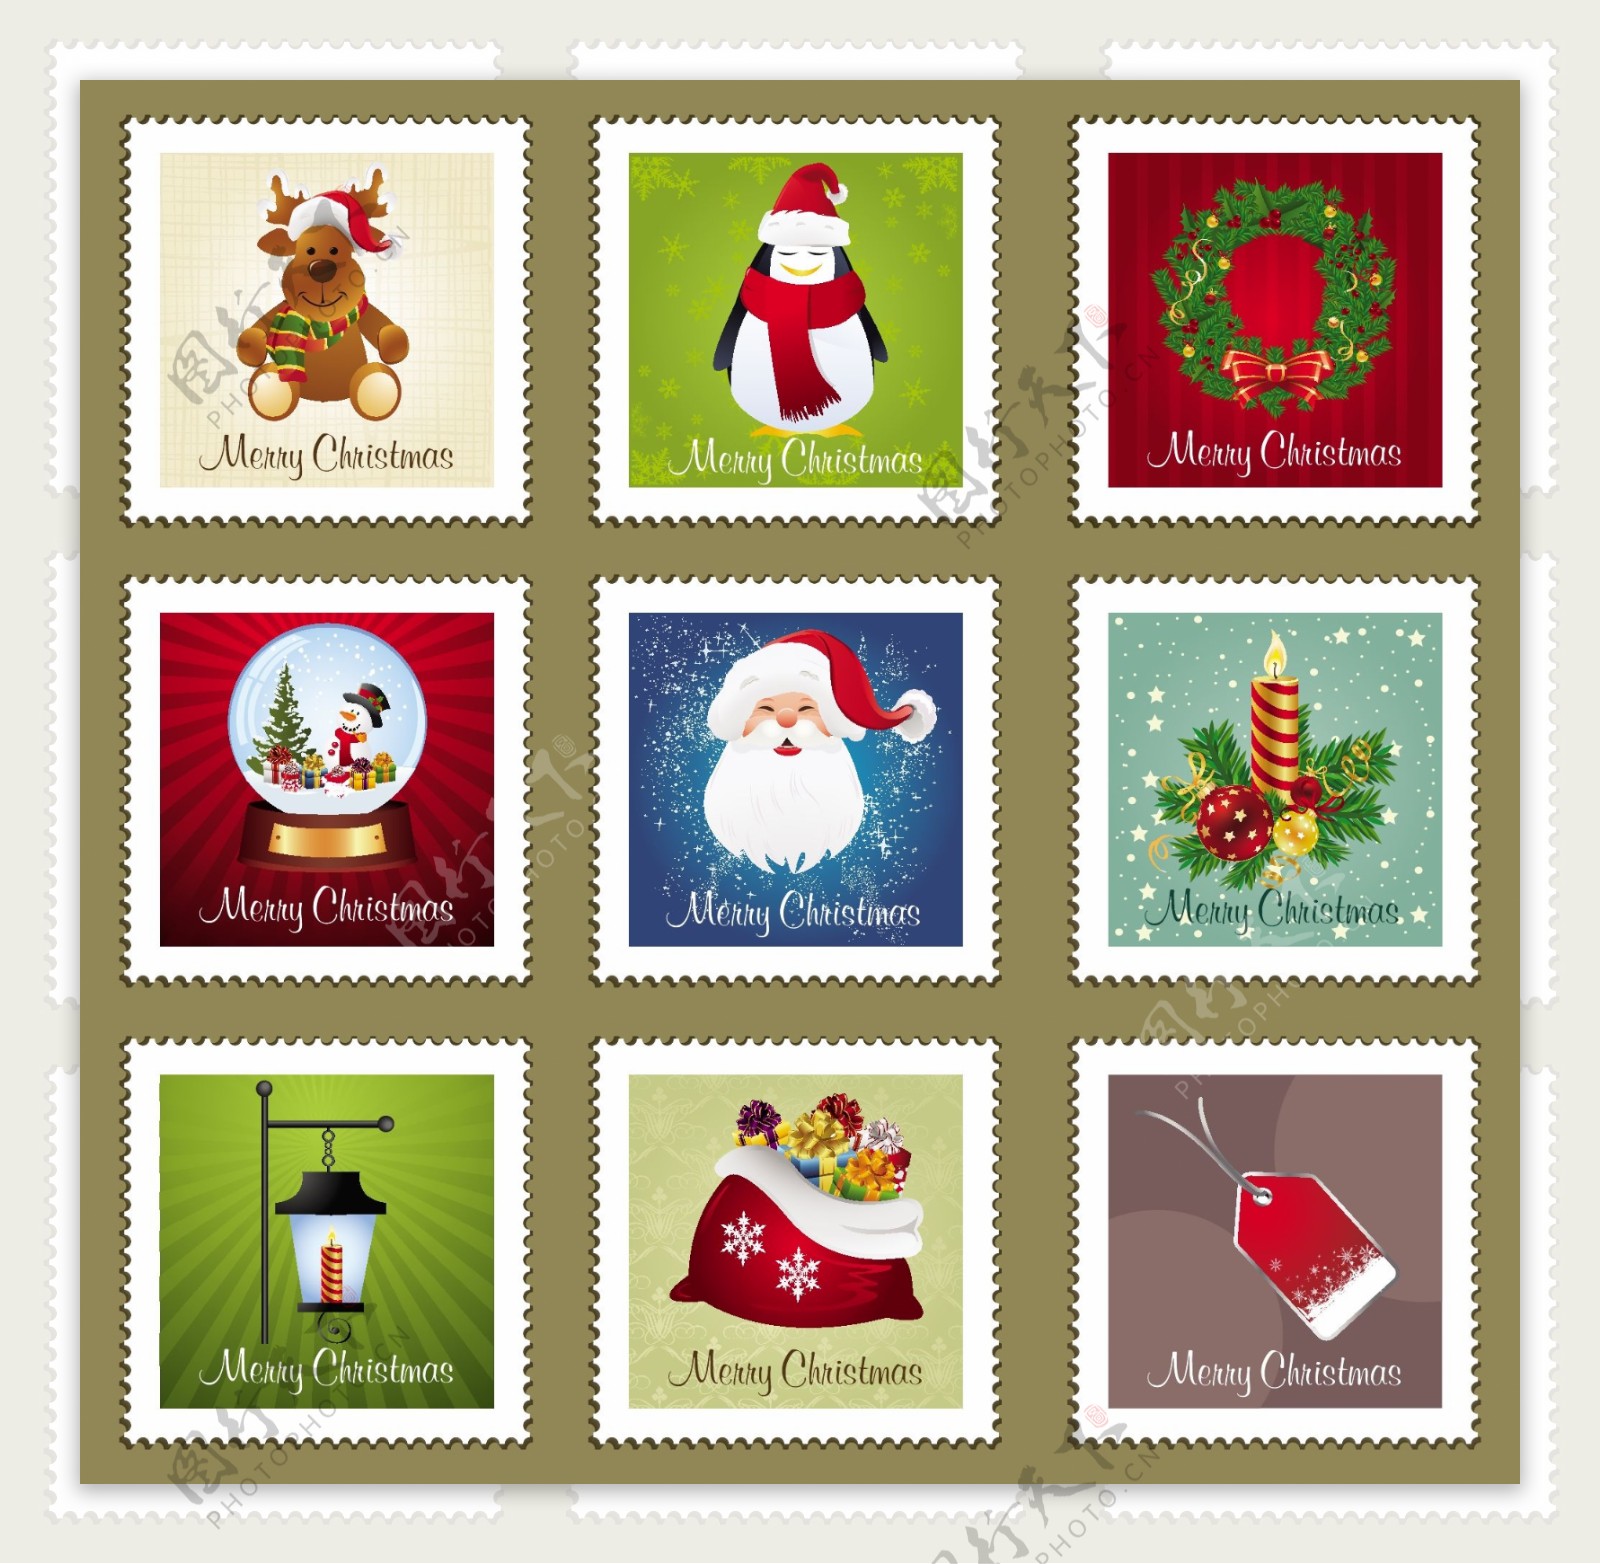 圣诞节邮票图片